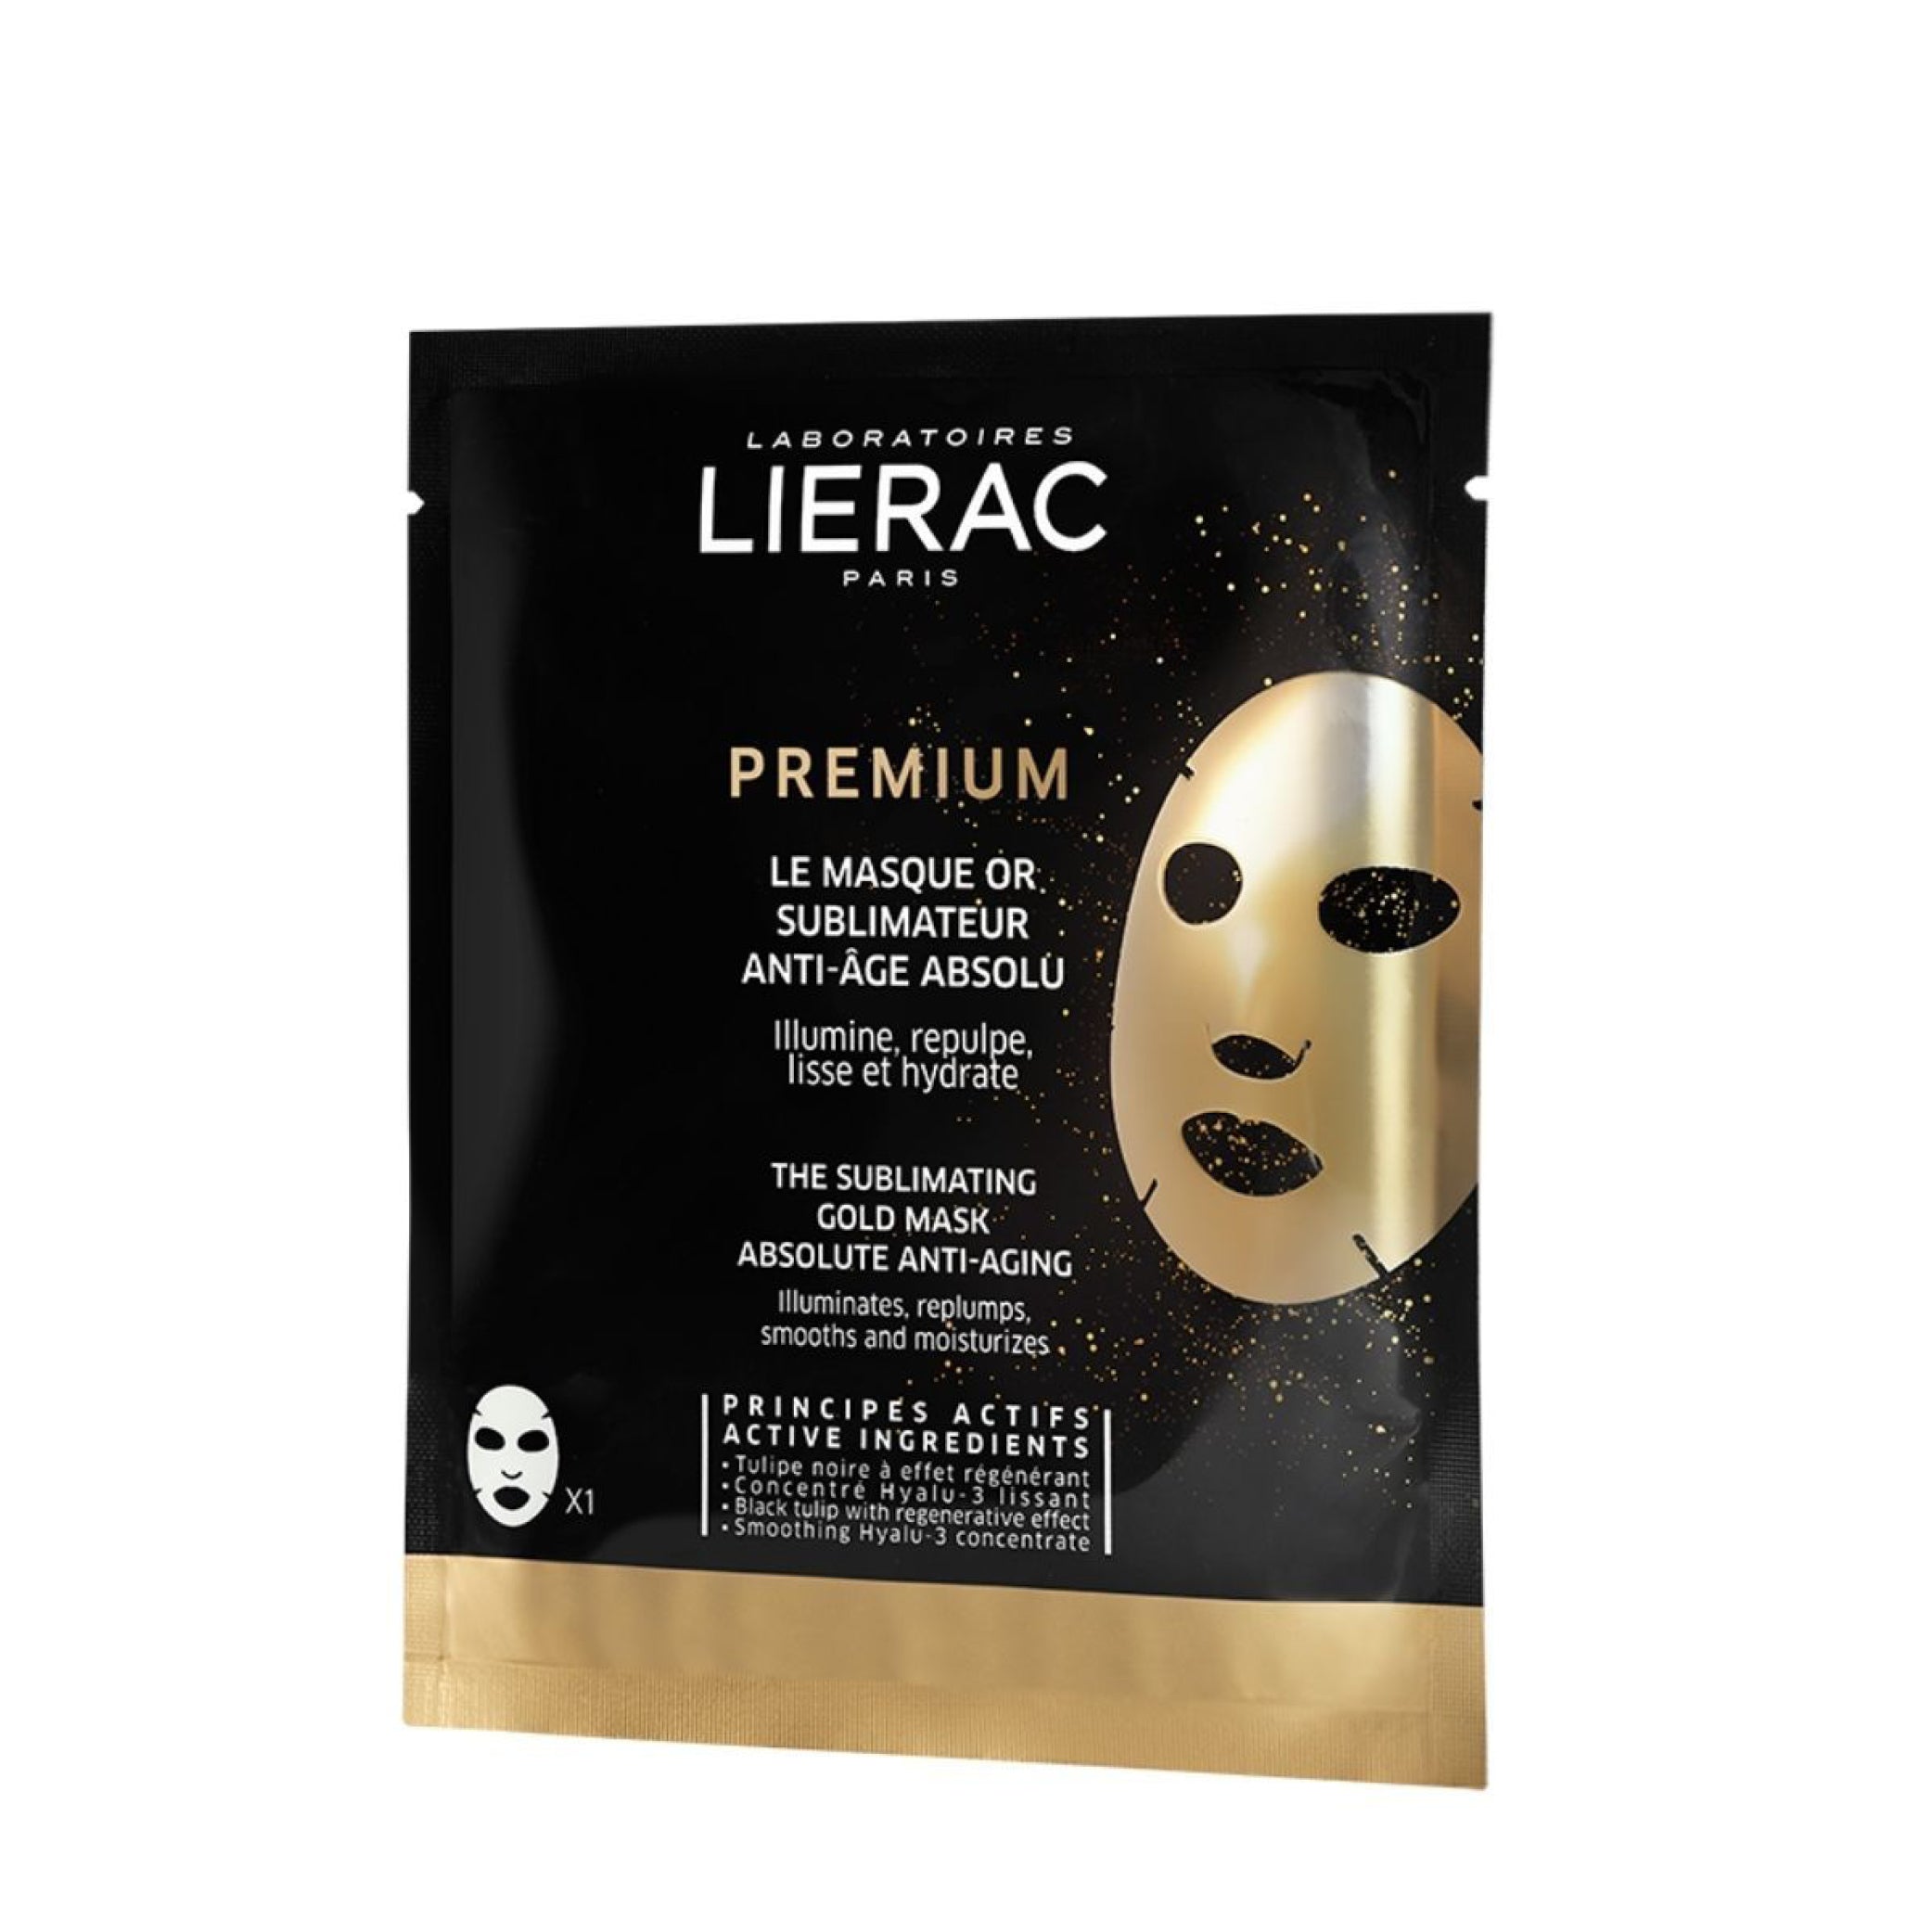 Premium masque or sublimateur